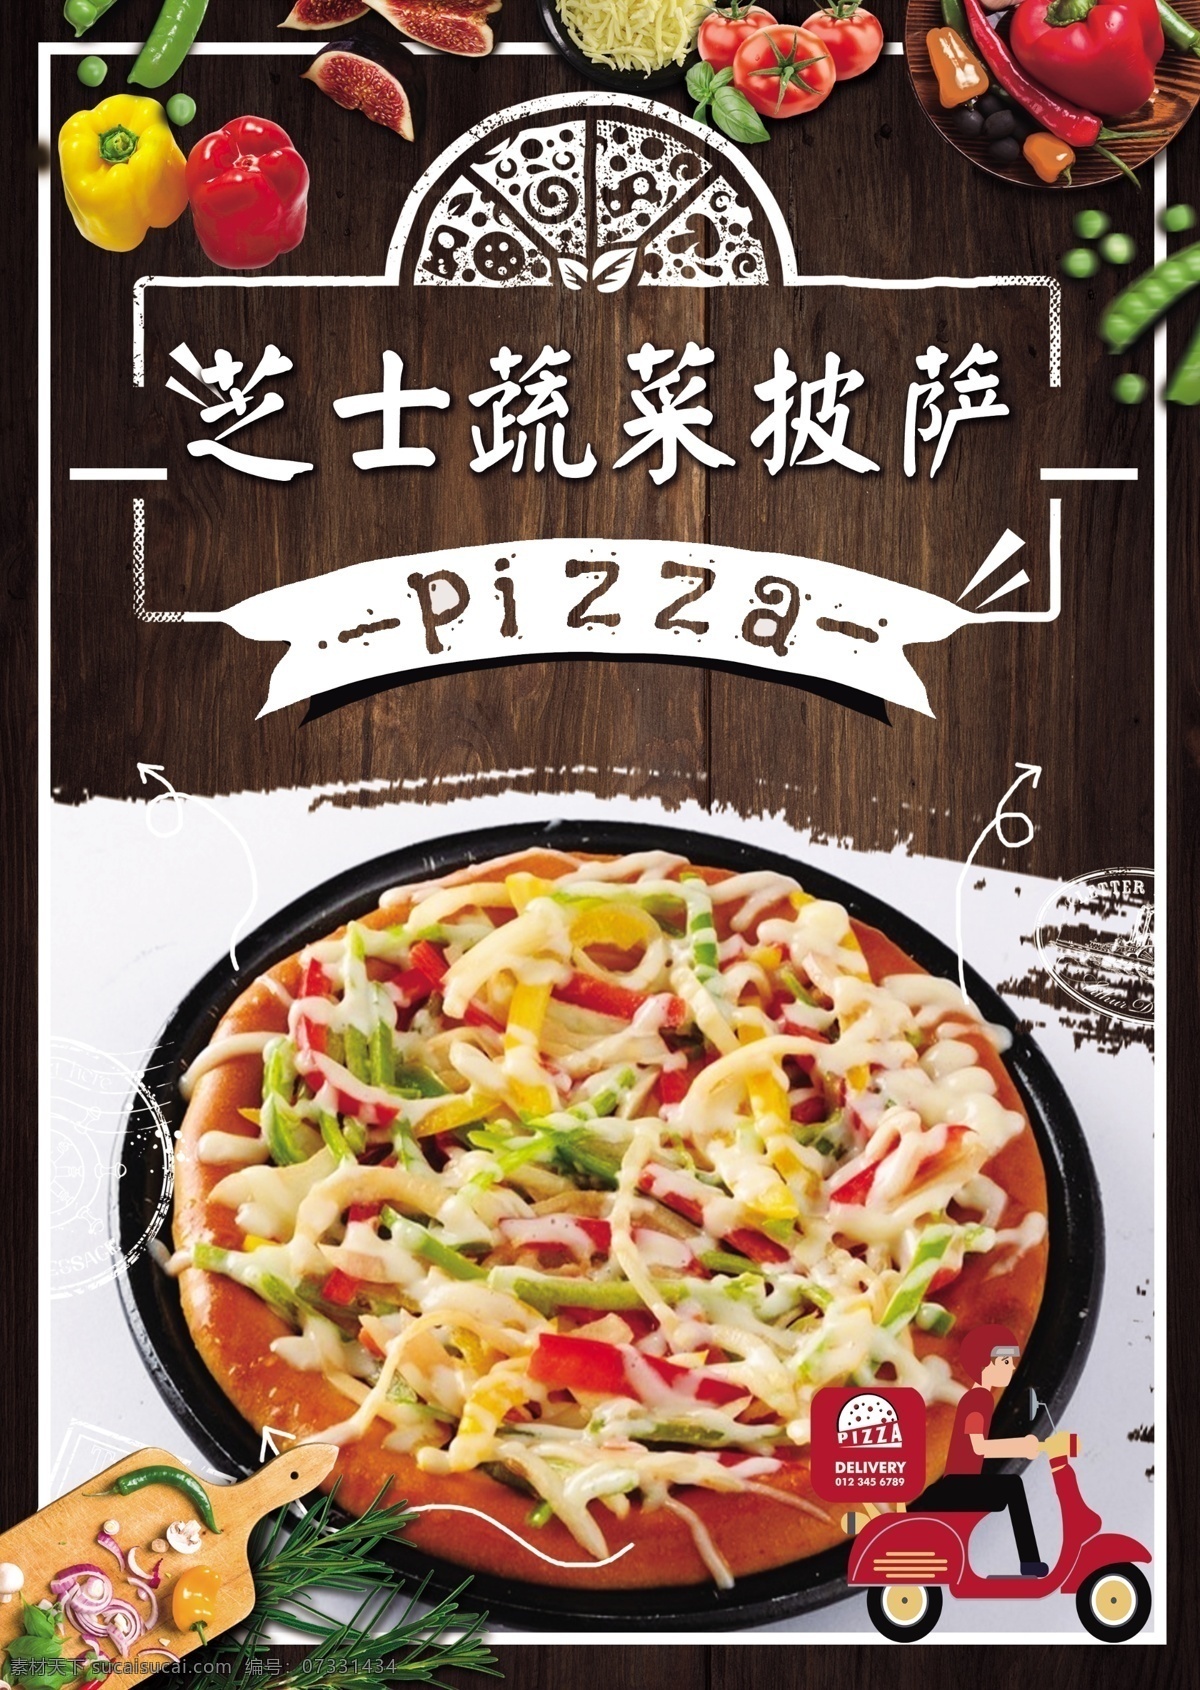 芝士蔬菜披萨 pizza 披萨 披萨店 烤披萨 做披萨 披萨图片 披萨海报 披萨展板 披萨墙画 披萨菜单 牛肉披萨 夏威夷披萨 bbq披萨 田园披萨 水果披萨 菠萝披萨 意式披萨 披萨字体 培根披萨 至尊披萨 披萨展架 西餐披萨 披萨广告 披萨宣传 披萨制作 外卖披萨 披萨宣传单 披萨单页 美味披萨